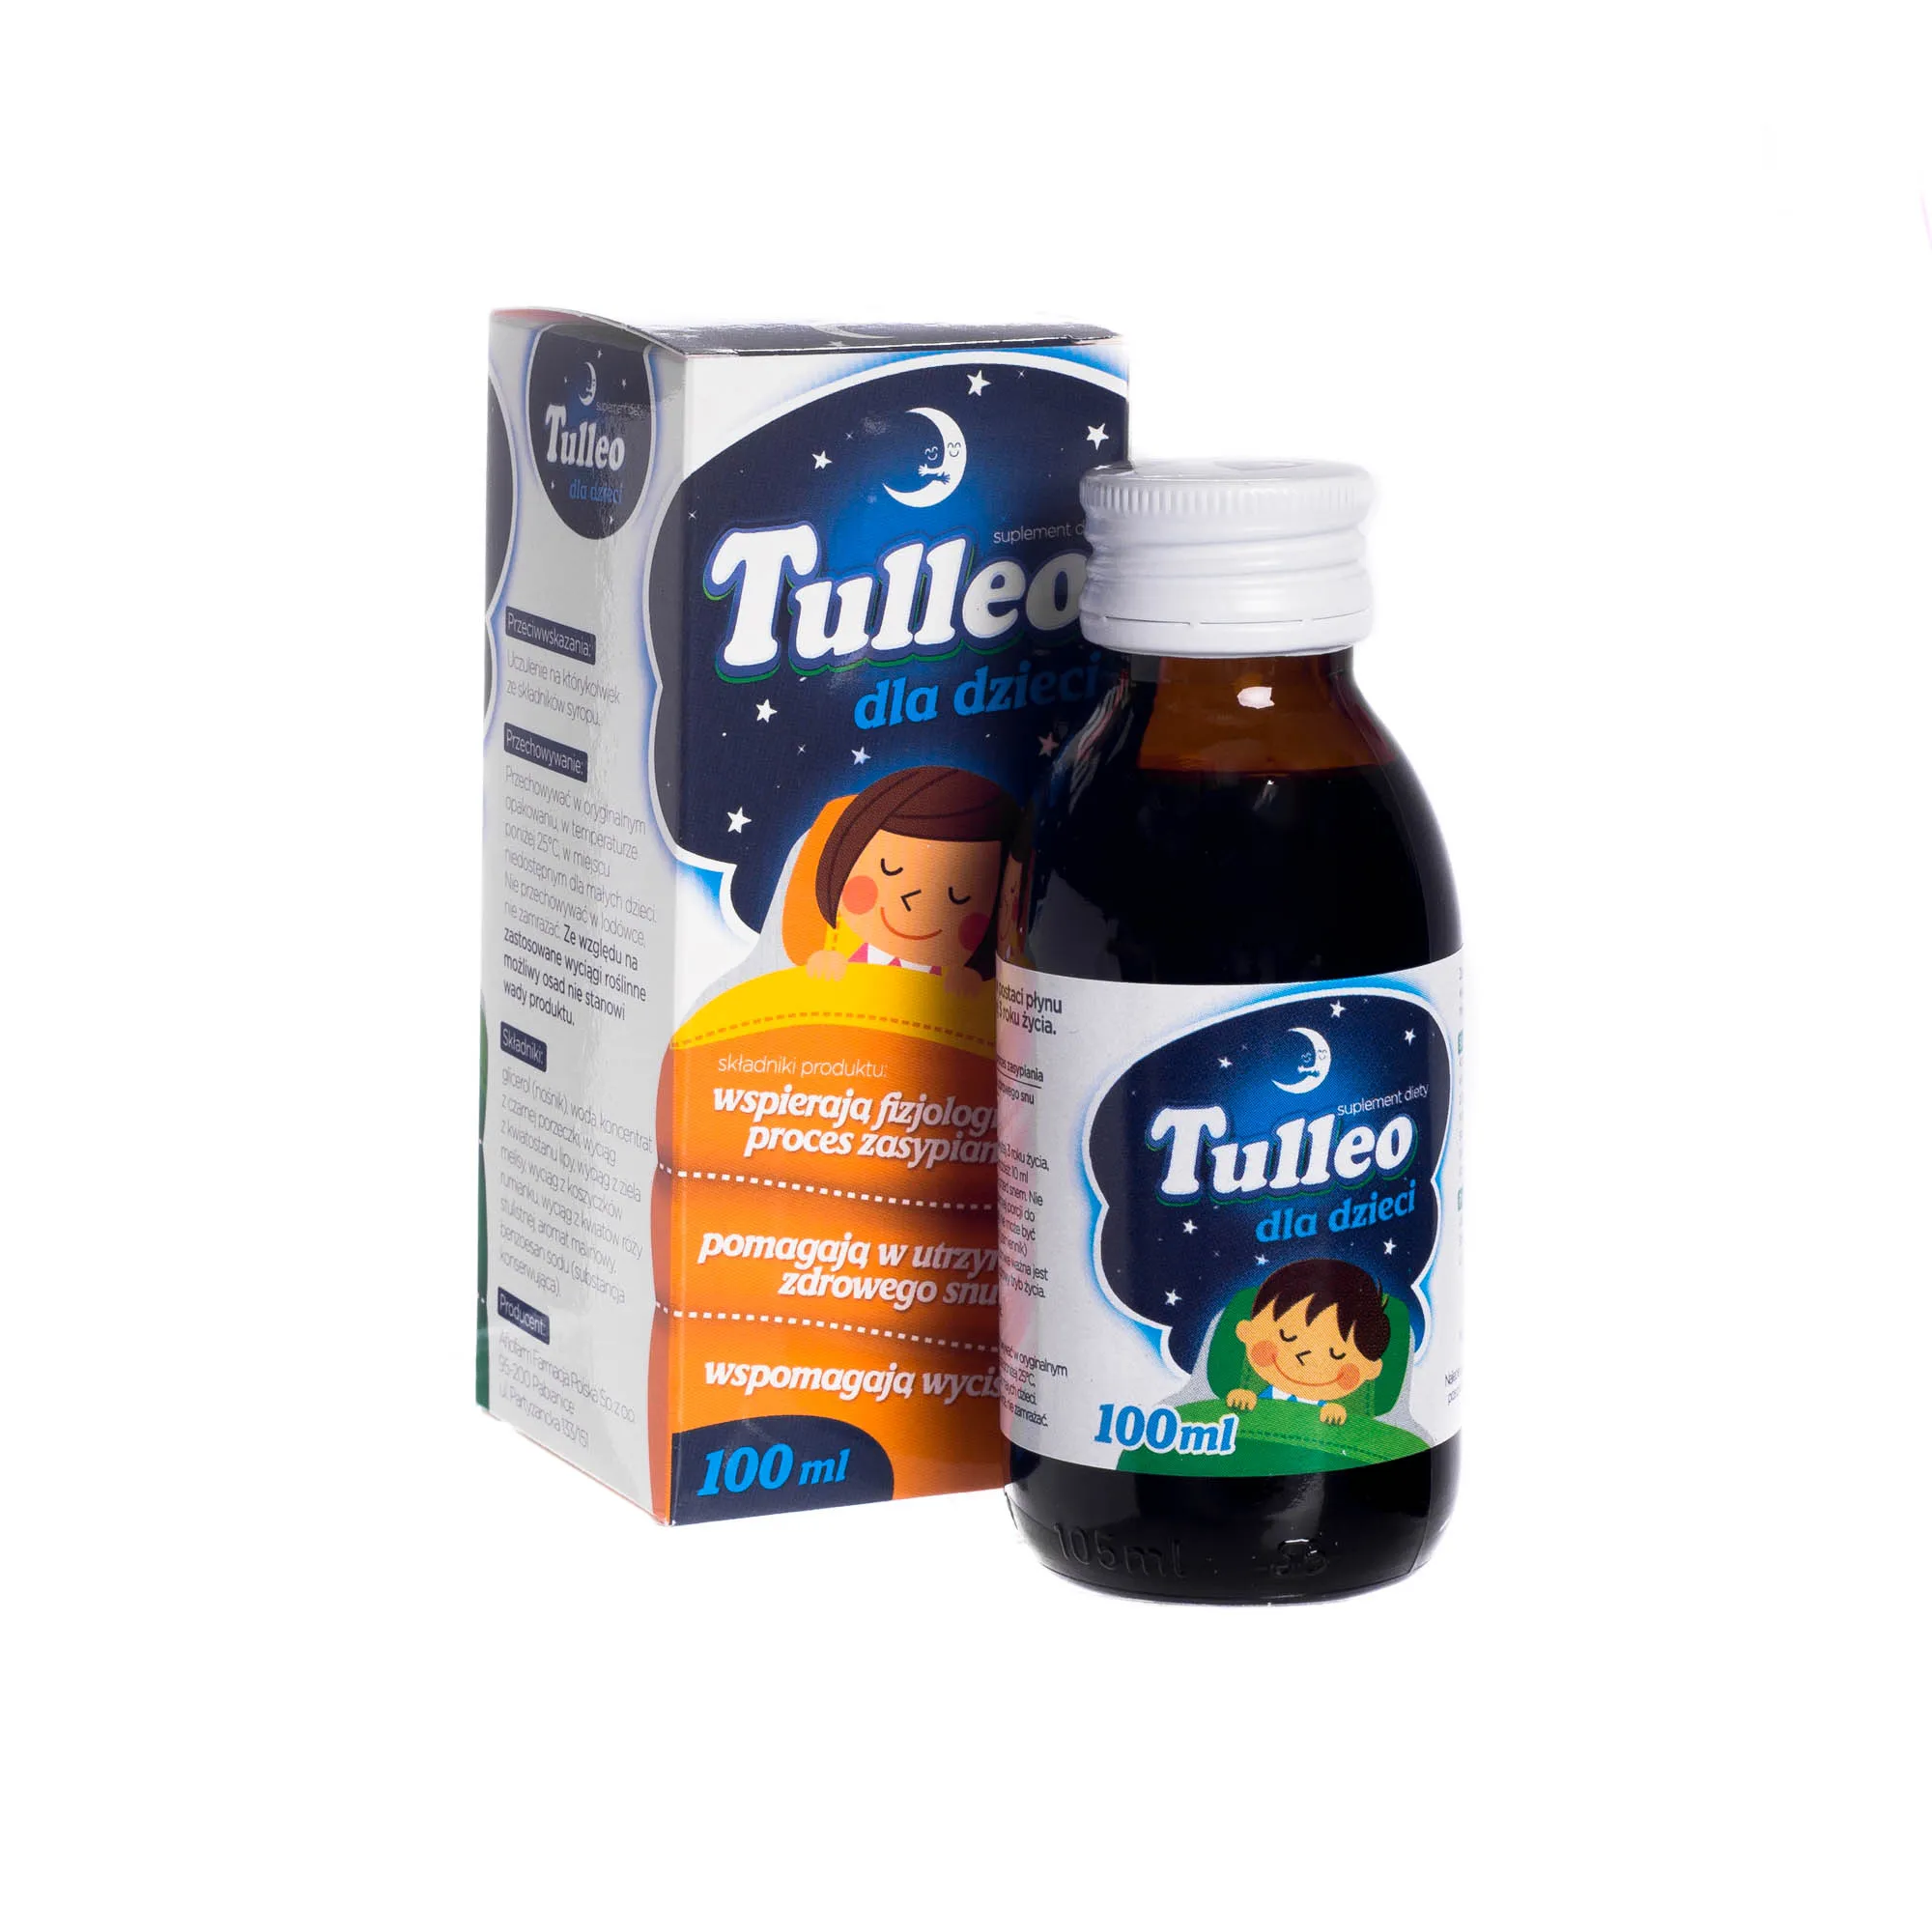 Tulleo - suplement diety dla dzieci wspierający fizjologiczny proces zasypiania, 100 ml